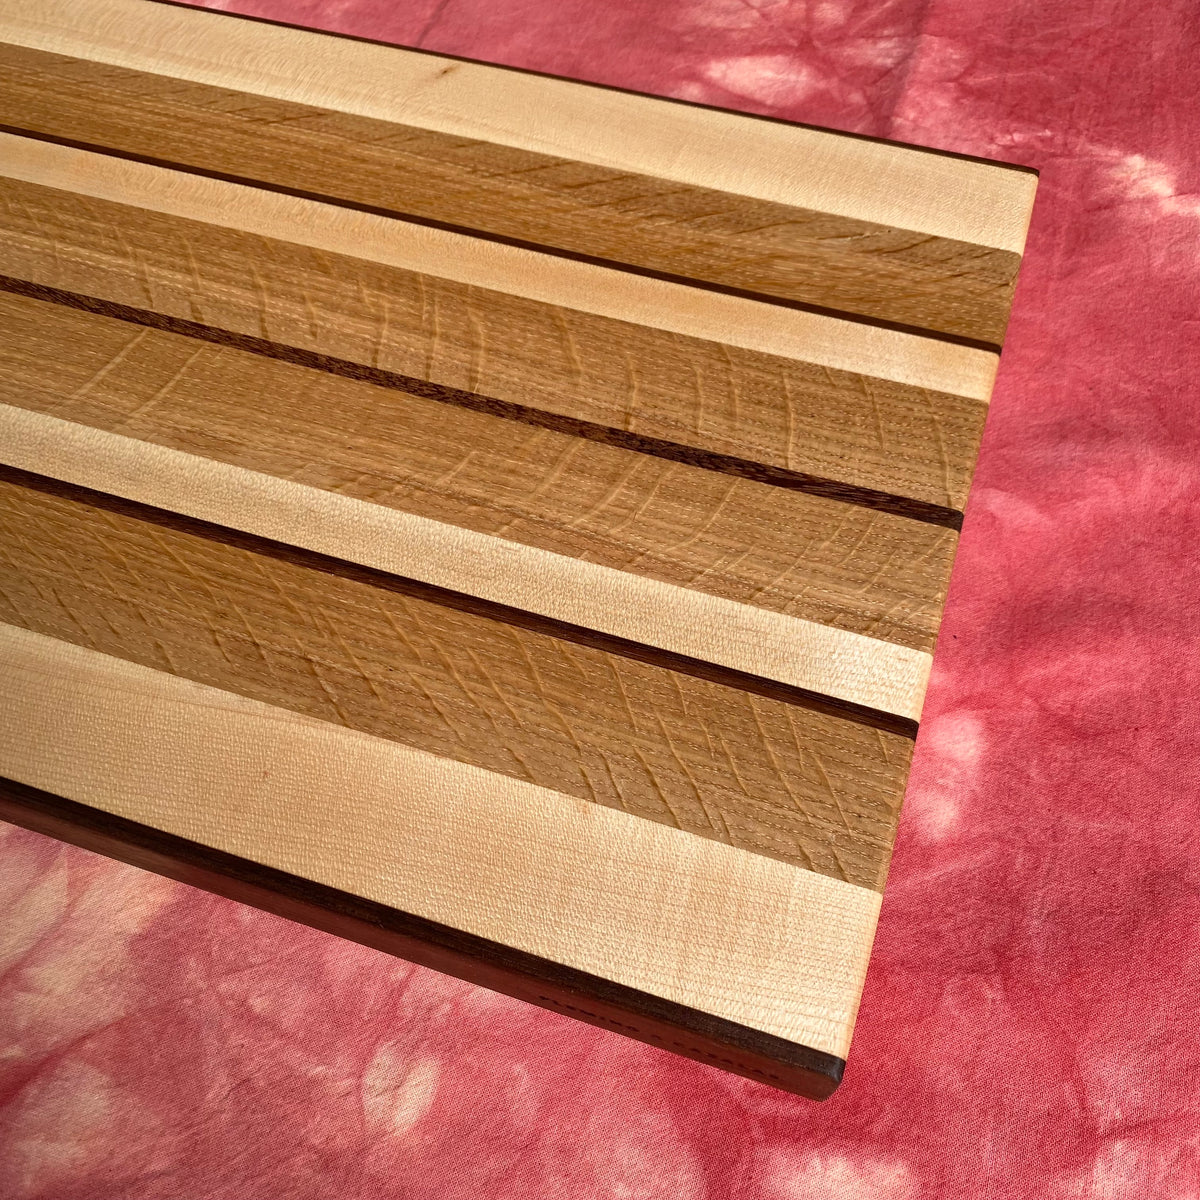 White Oak Cutting Boards